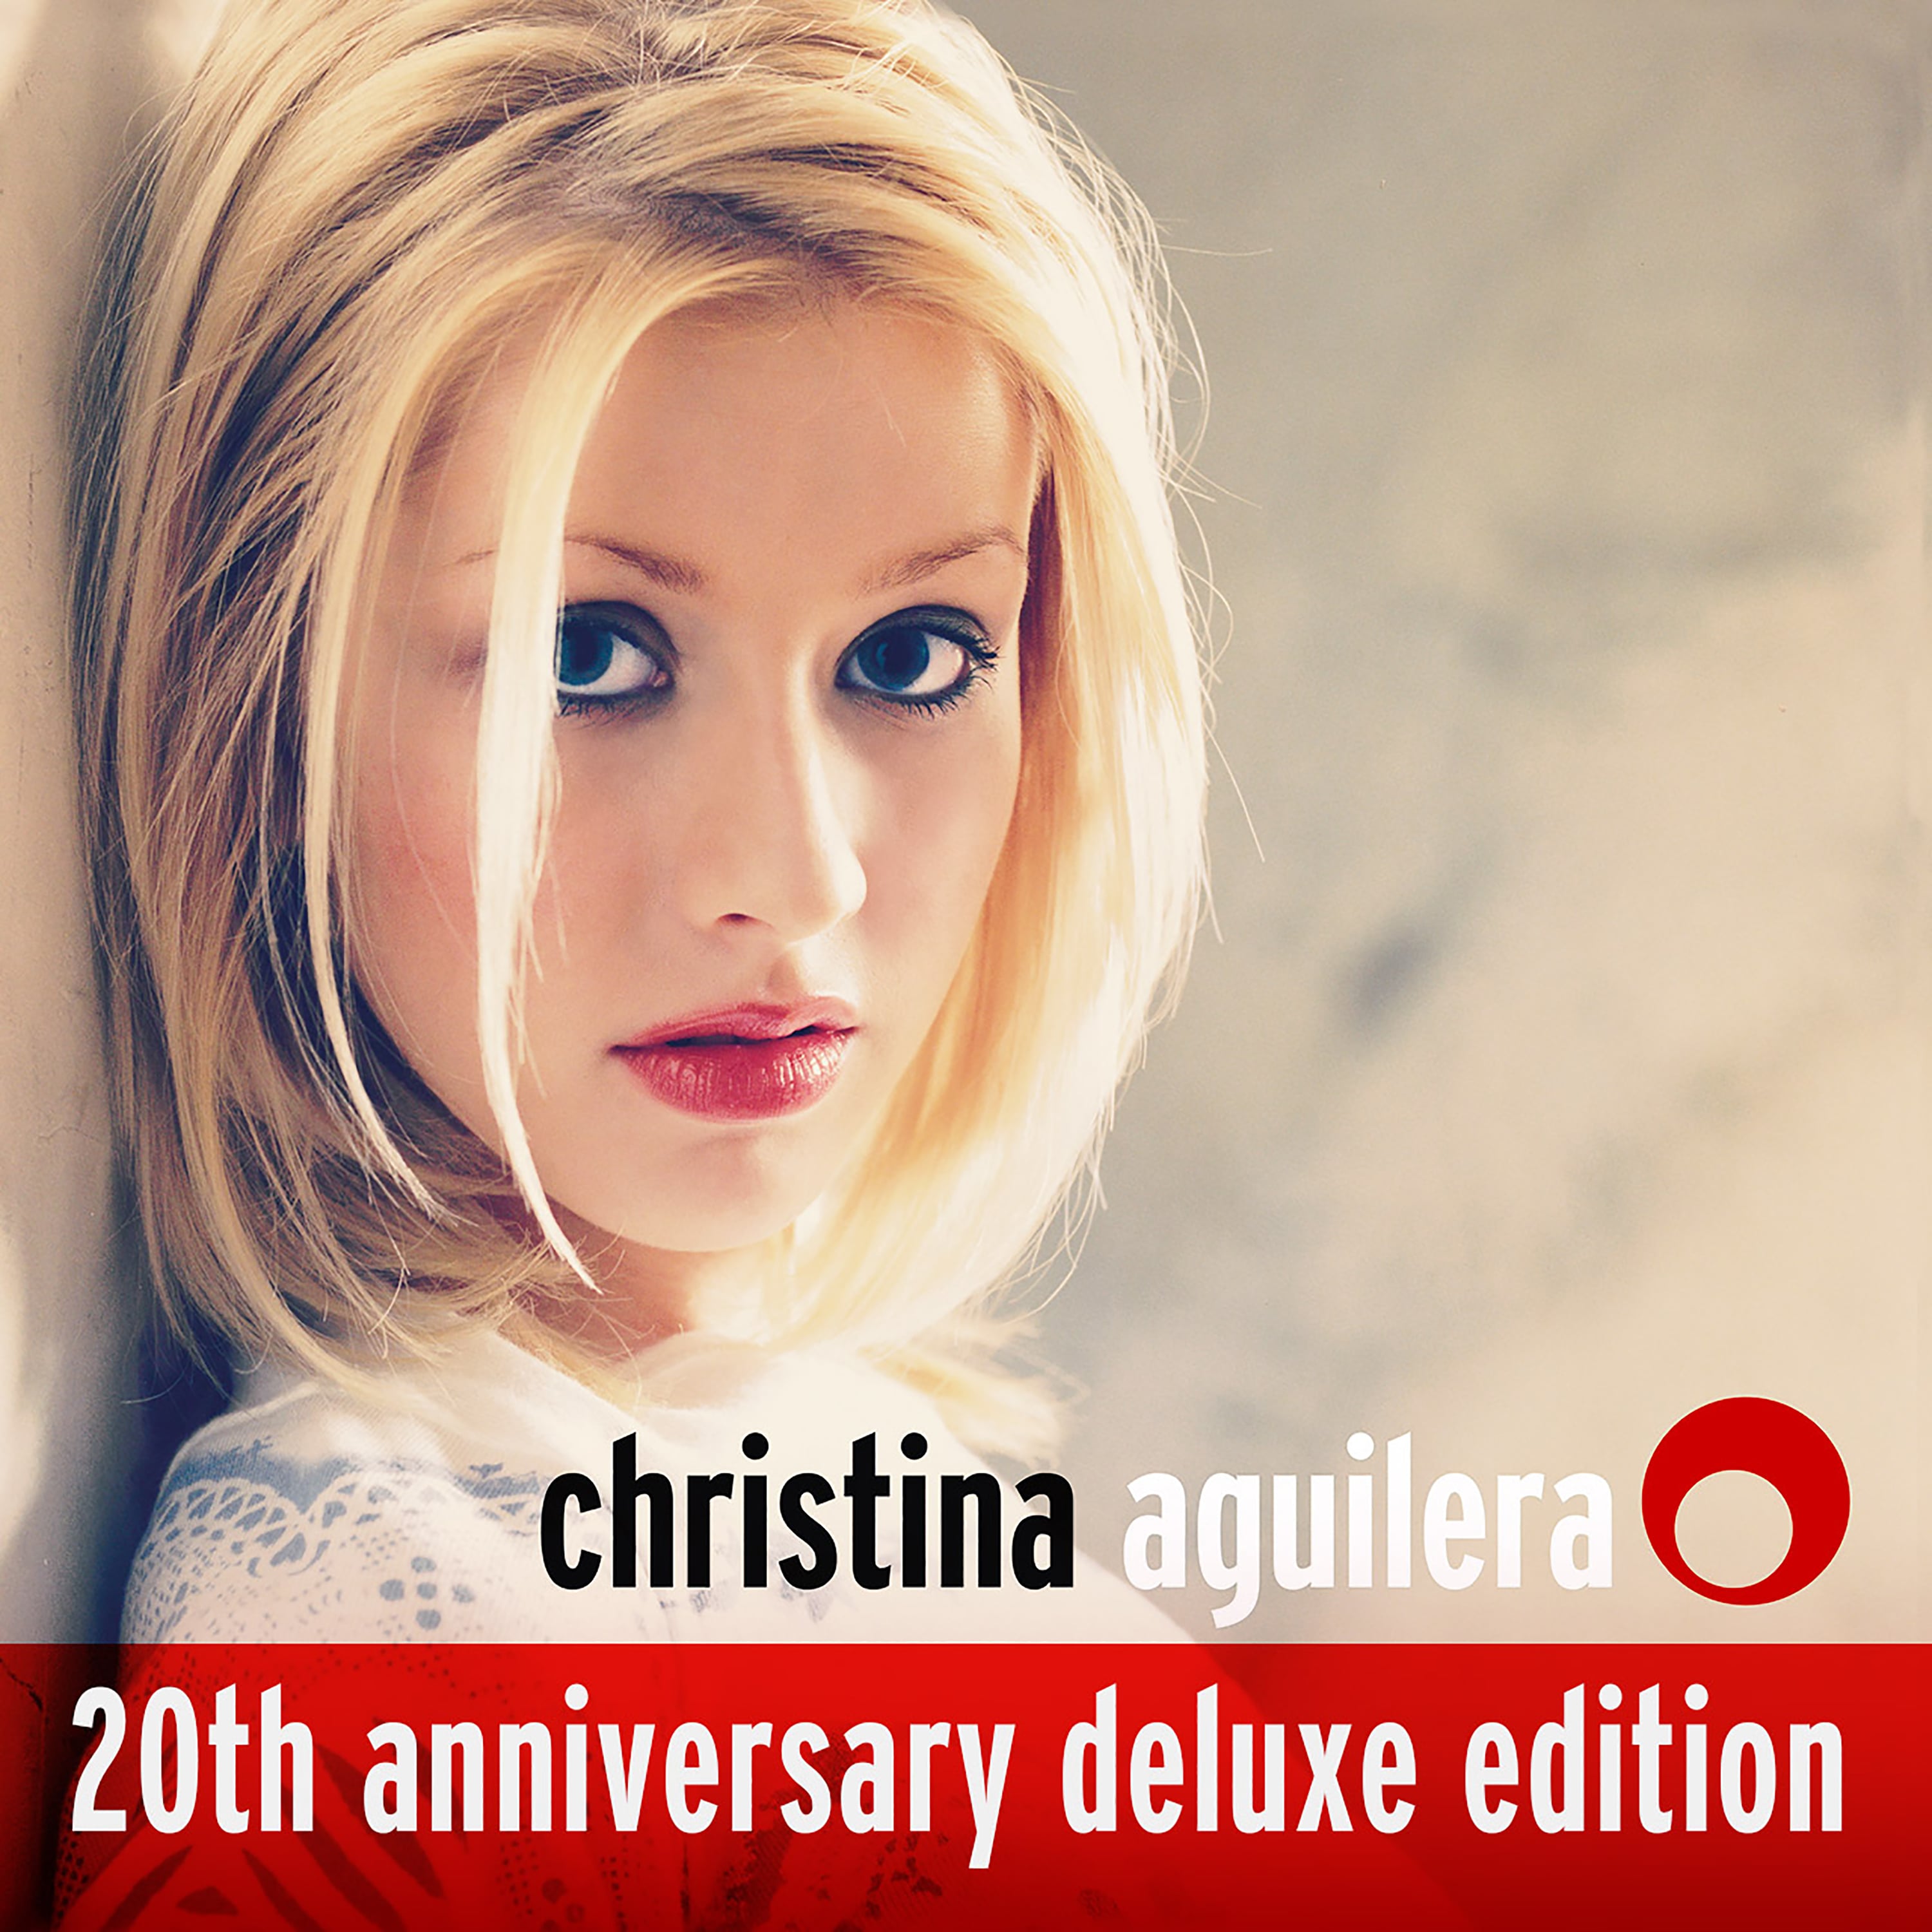 christina aguilera christina aguilera album cover